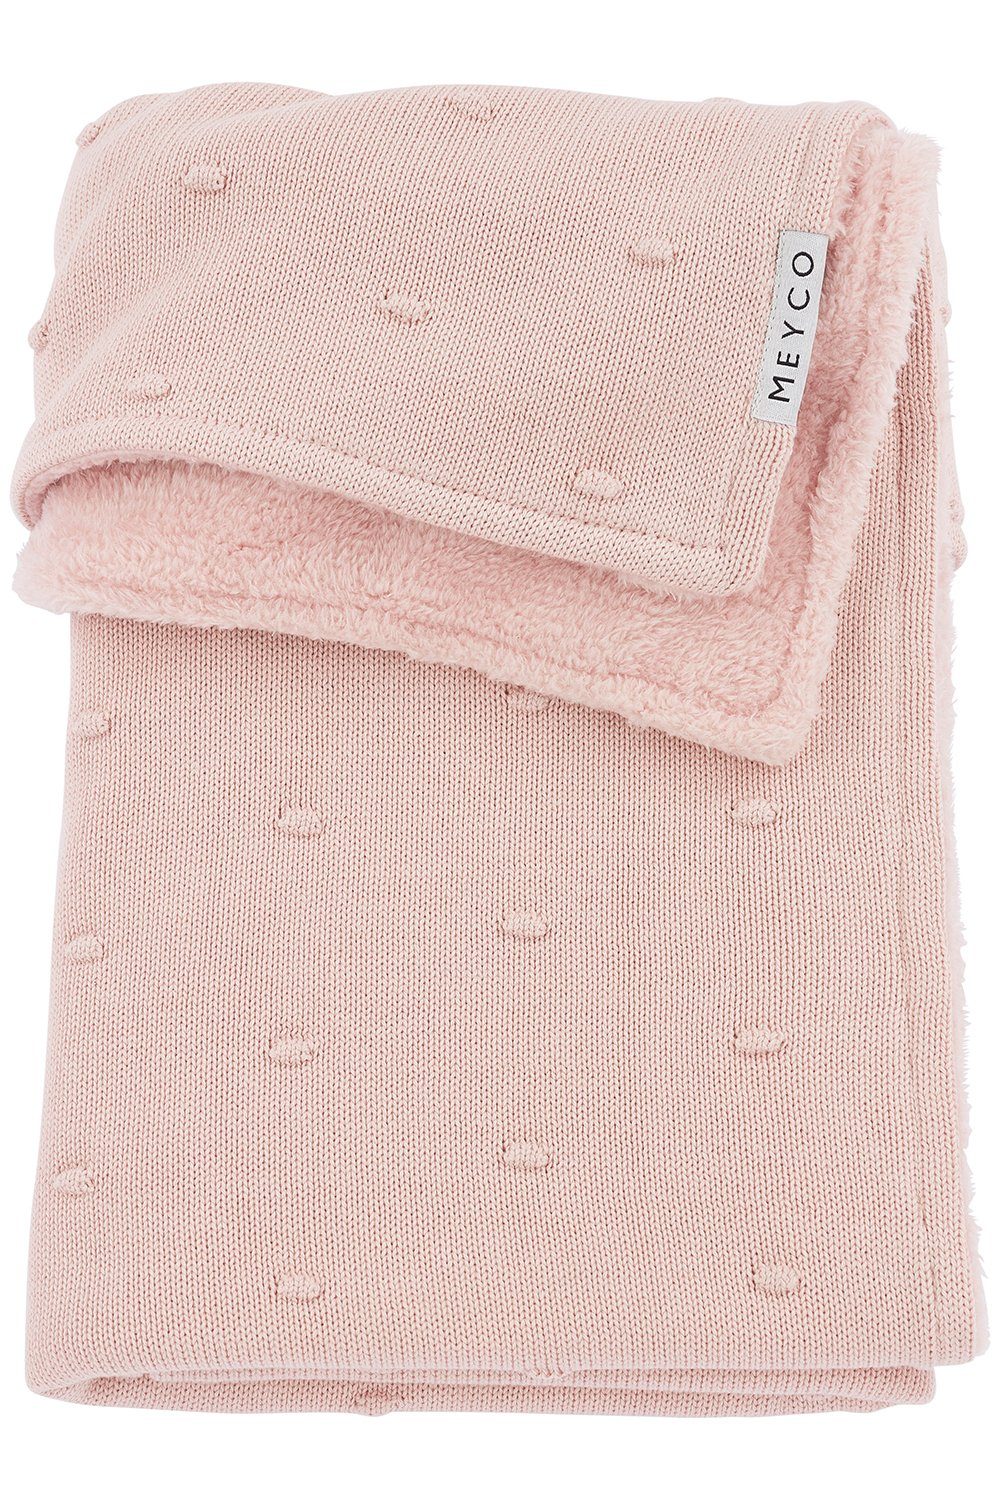 Babydecke Mini Knots teddy Soft Pink, Meyco Baby, 75x100cm